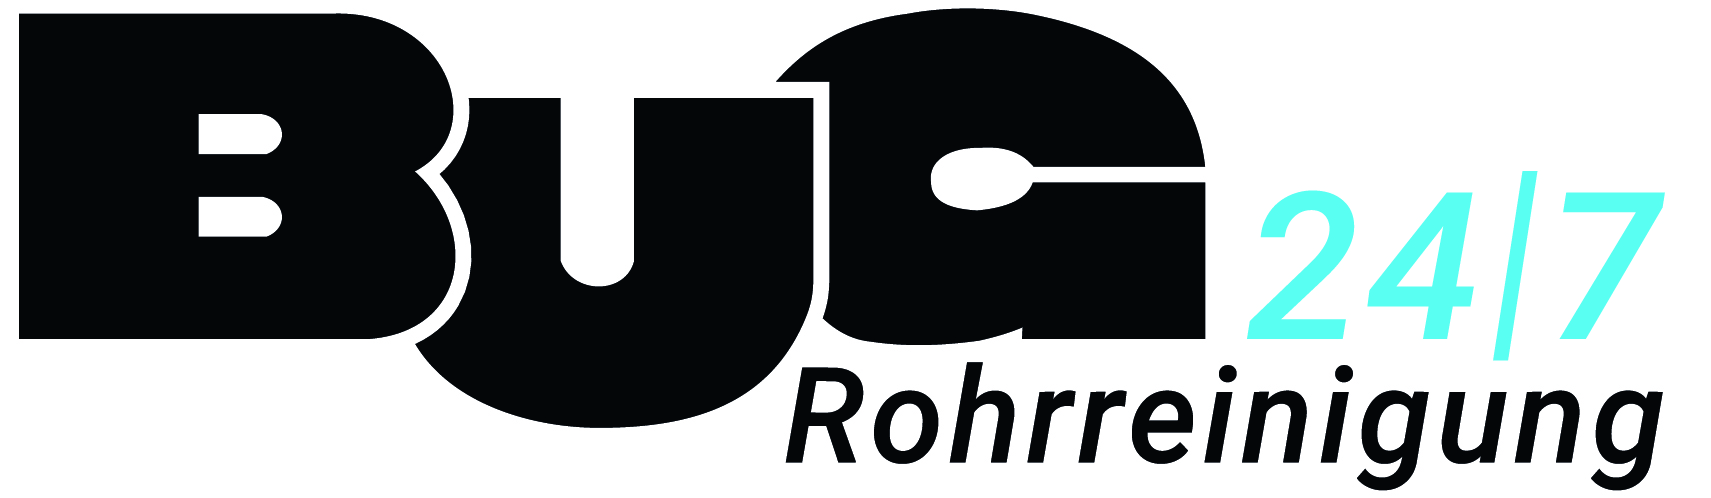 BUG Rohrreinigung GmbH